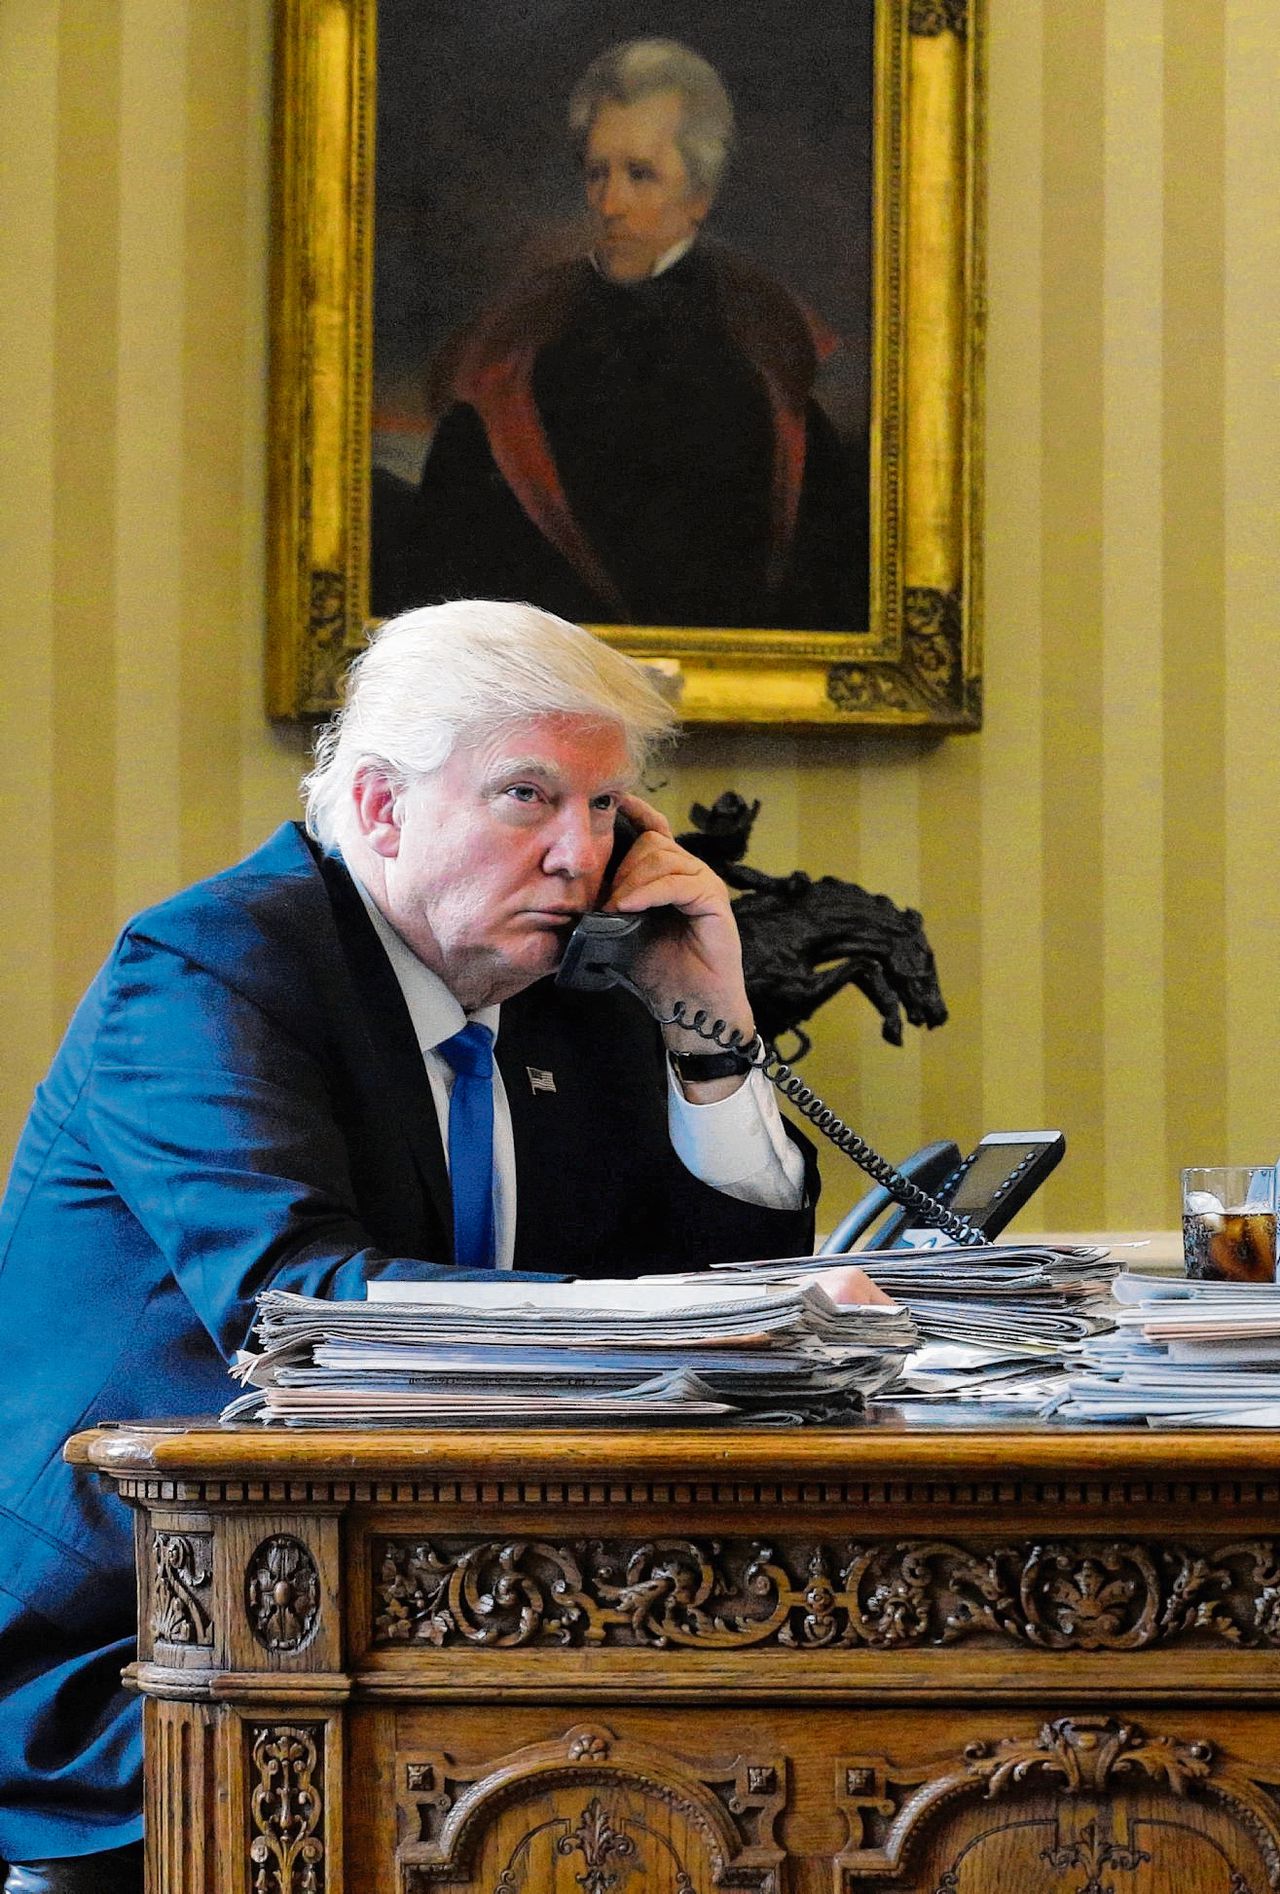 President Trump in de Oval Office.